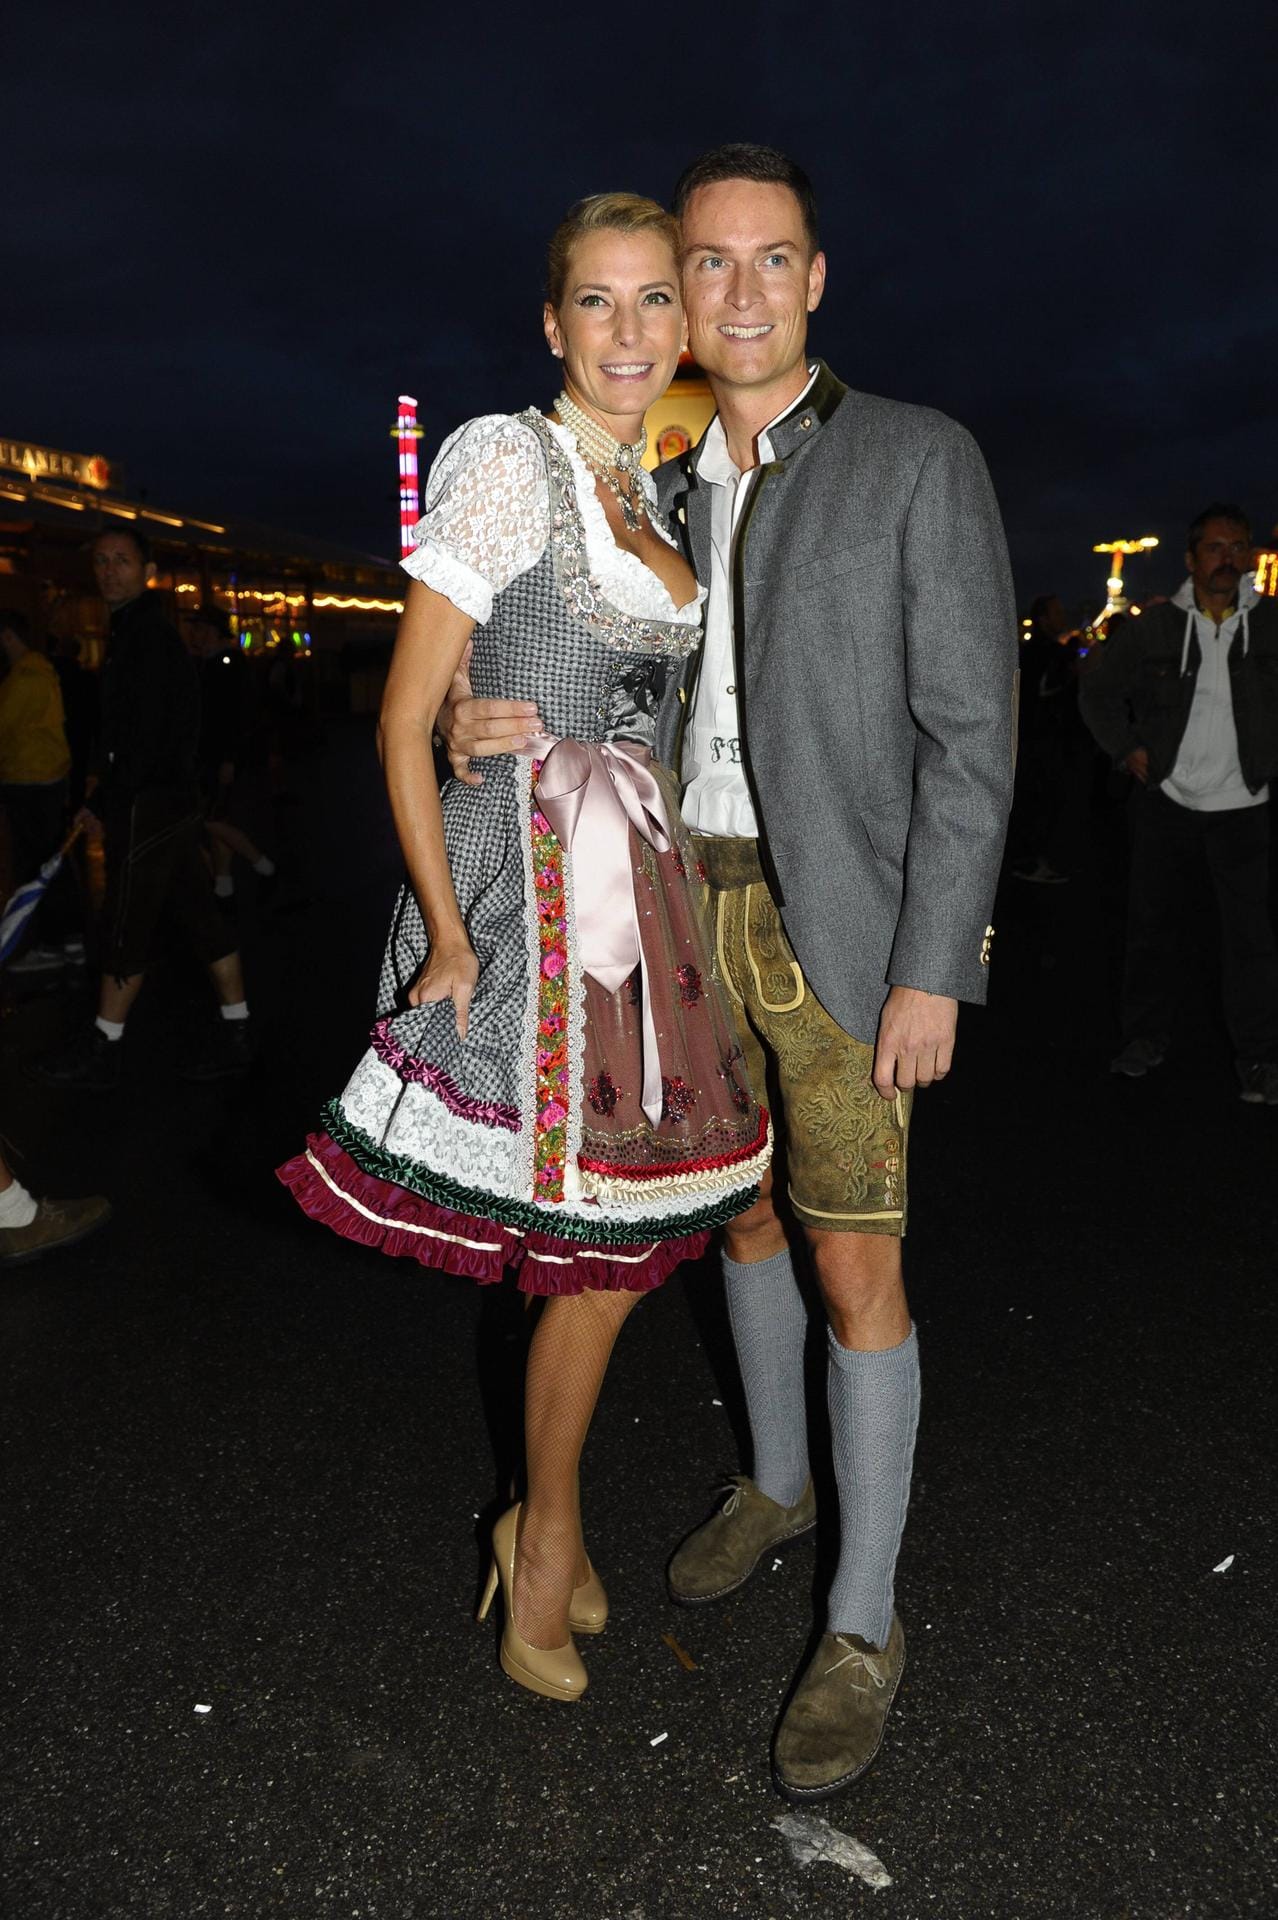 In Sachen Liebe: 2014 war Giulia Siegel mit ihrem damaligen Freund Frank Büchtmann auf den Wiesn unterwegs.